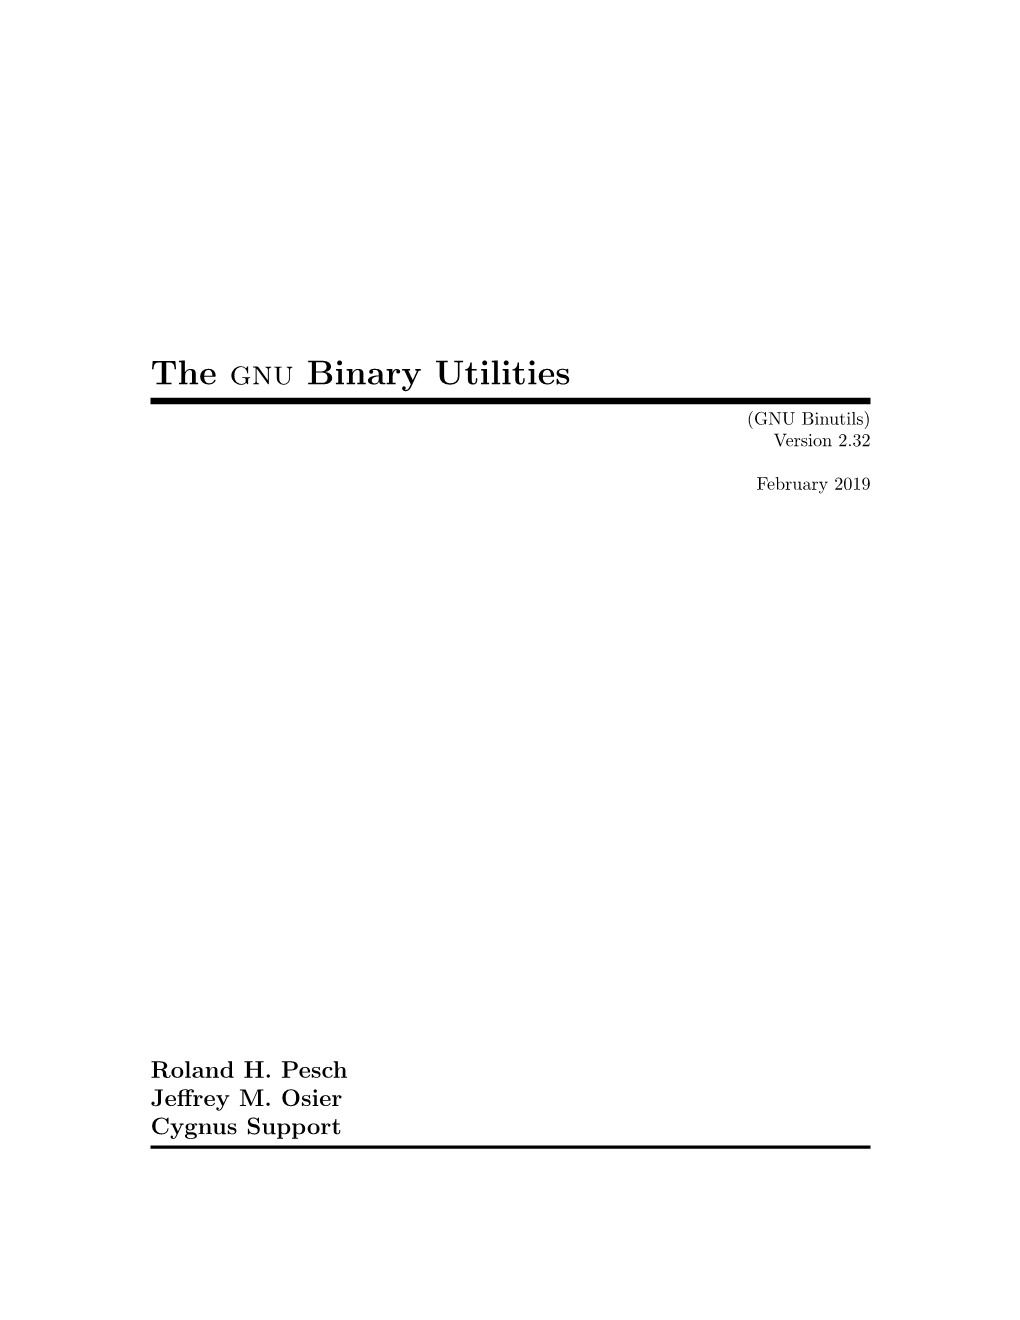 The Gnu Binary Utilities (GNU Binutils) Version 2.32